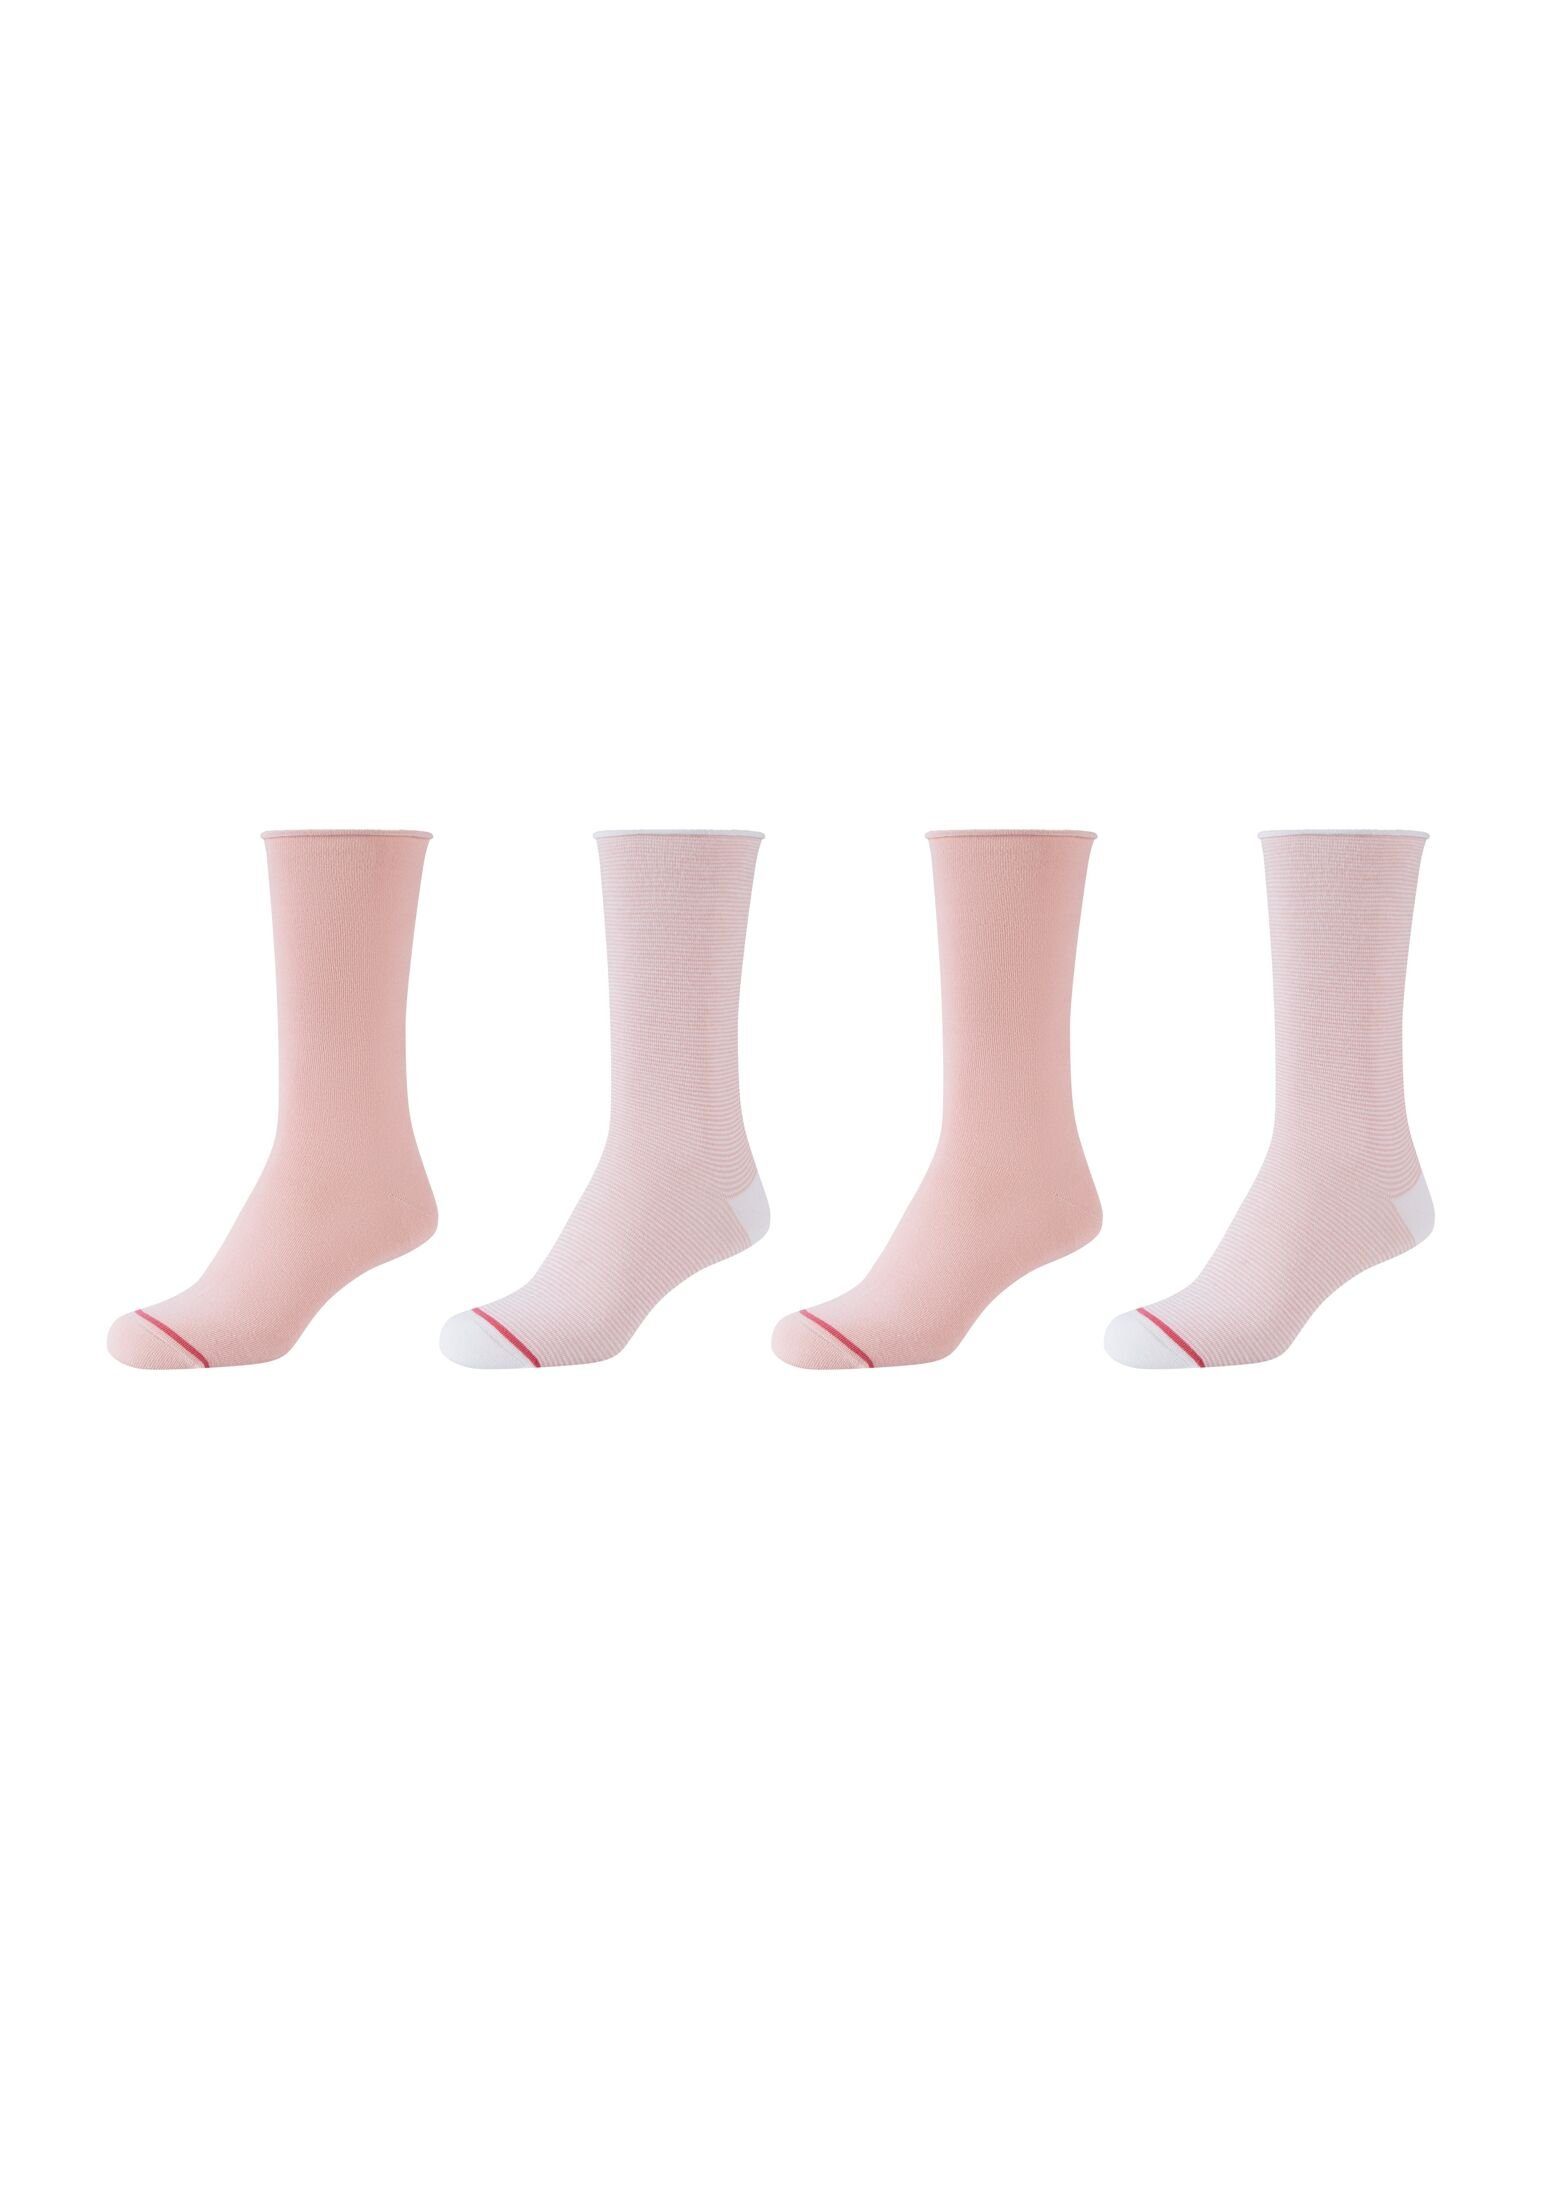 Verkaufskunde s.Oliver Socken Socken 4er Pack peachskin